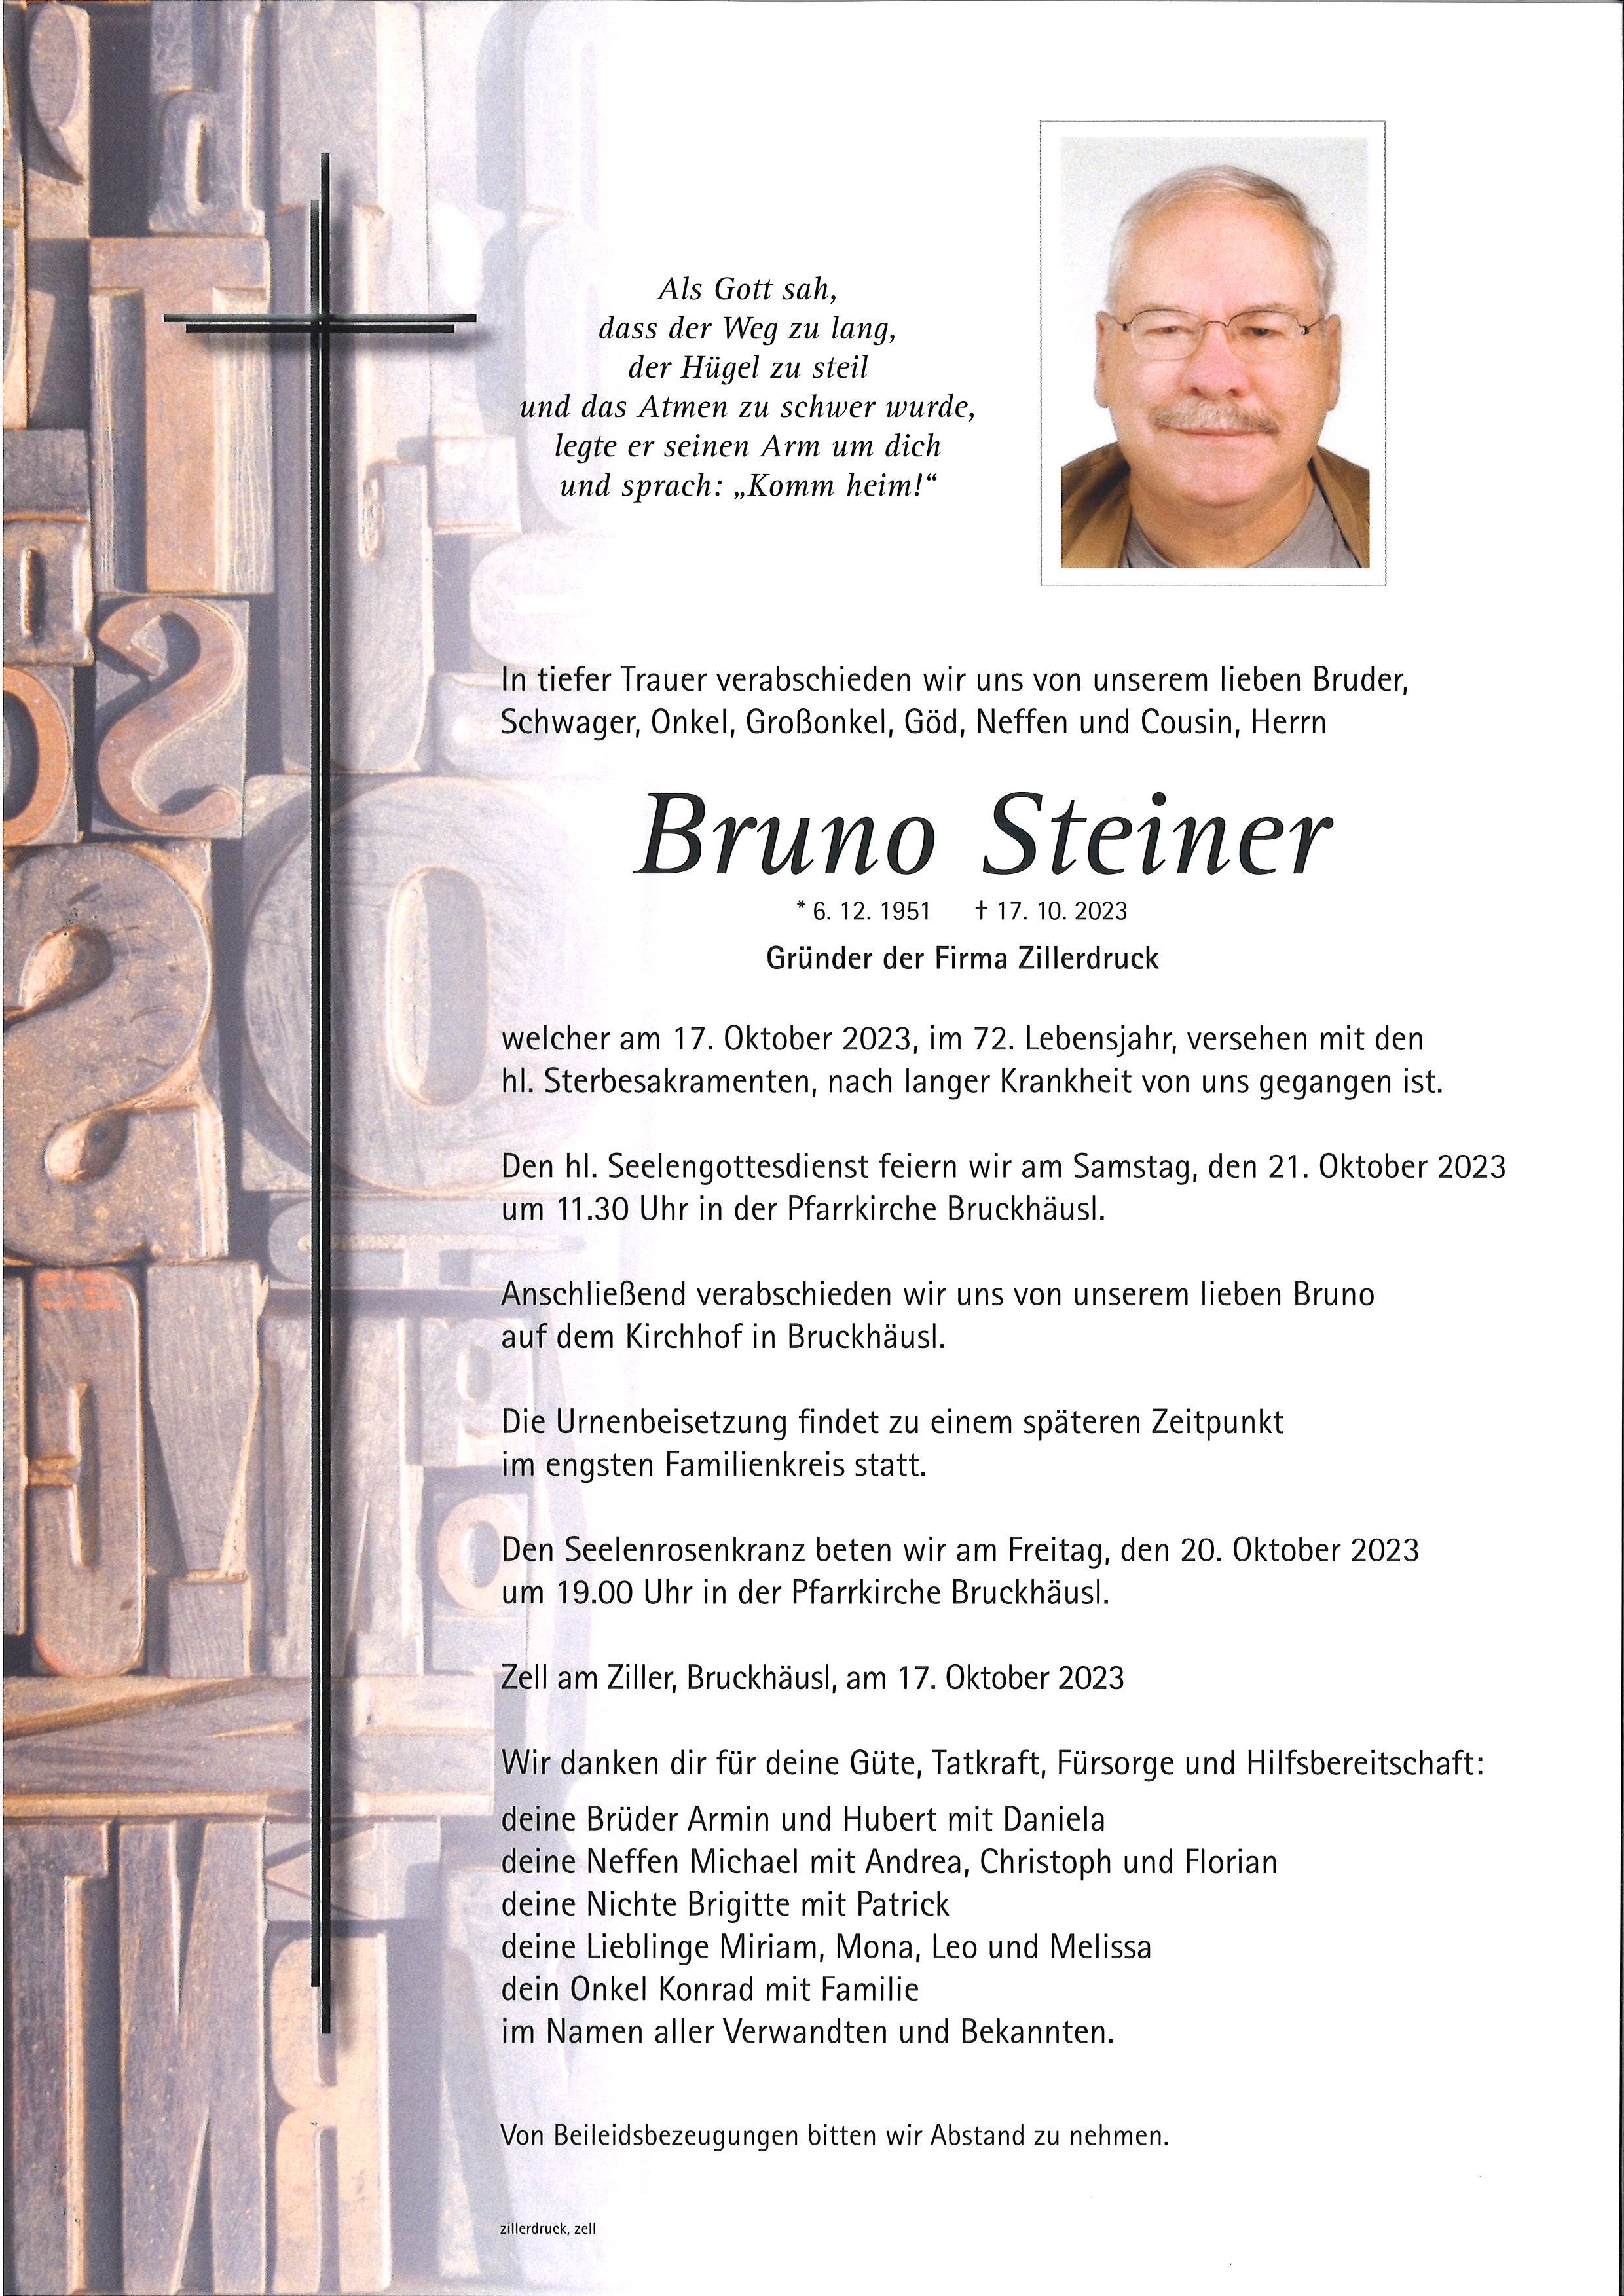 Bruno Steiner